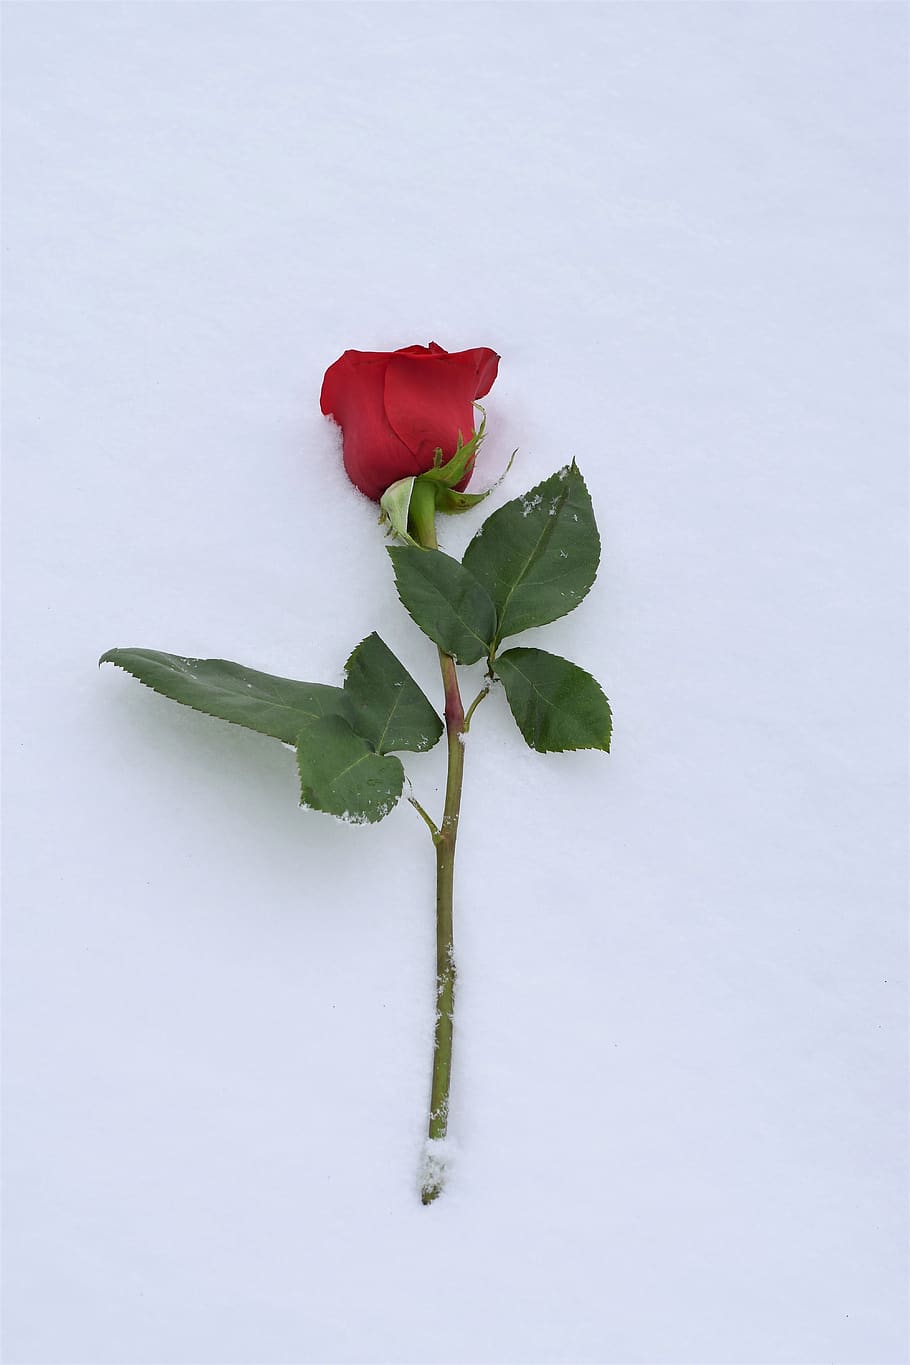 mawar merah di salju, simbol cinta, cinta sejati tidak pernah mati, musim dingin, salju, romantis, dingin, embun beku, di luar rumah, bunga